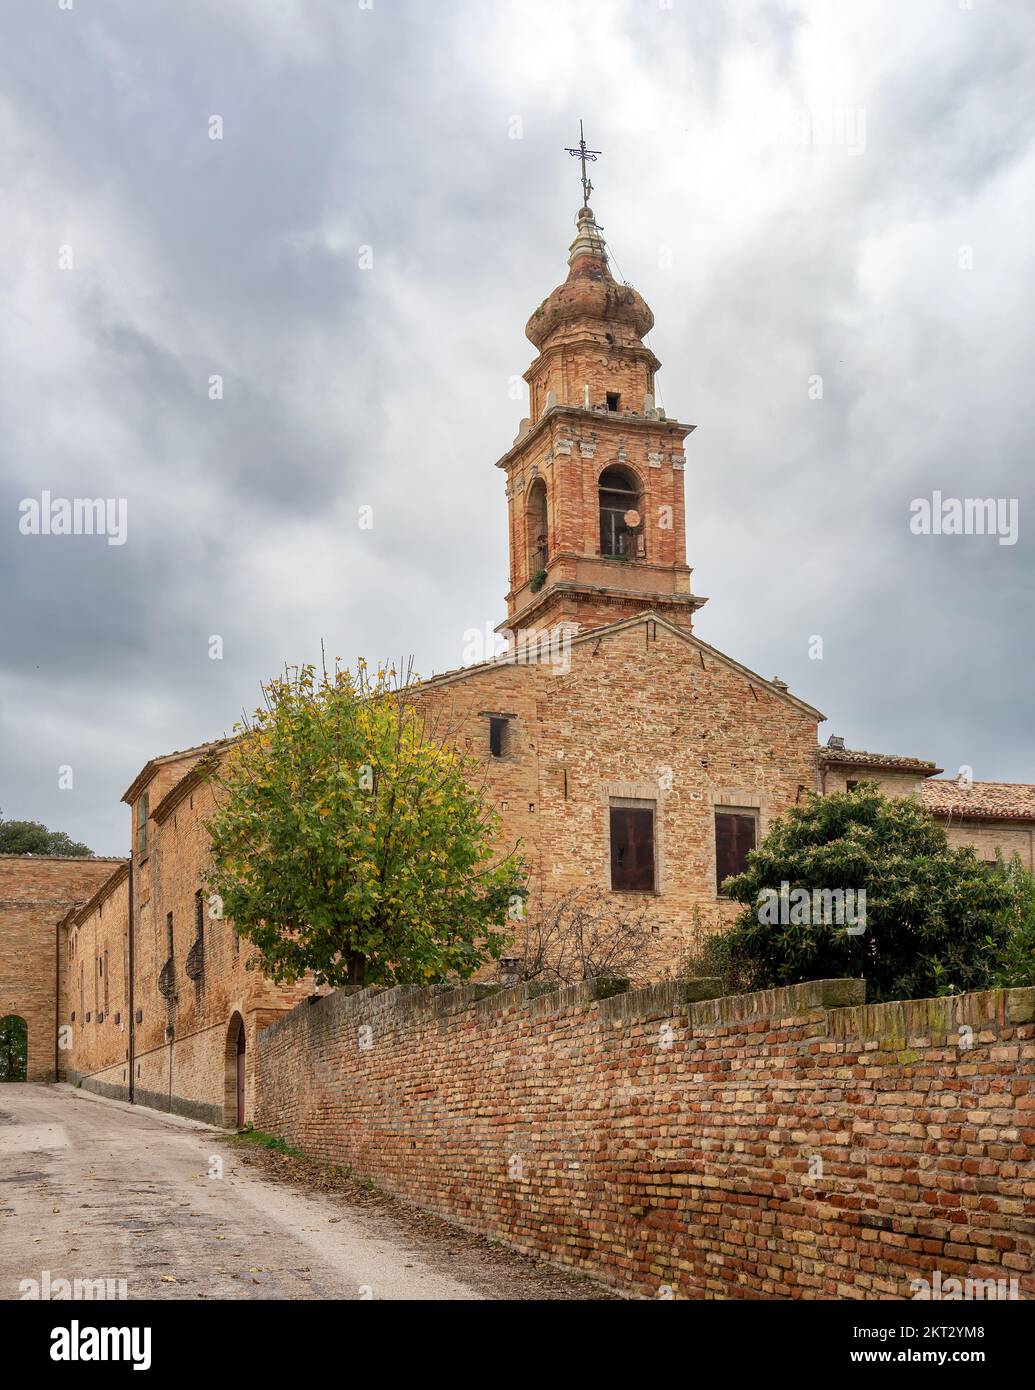 Santuario del Beato Sante nei pressi di Monbaroccio, piccolo borgo fortificato della provincia di Pesaro e Urbino nelle Marche Foto Stock